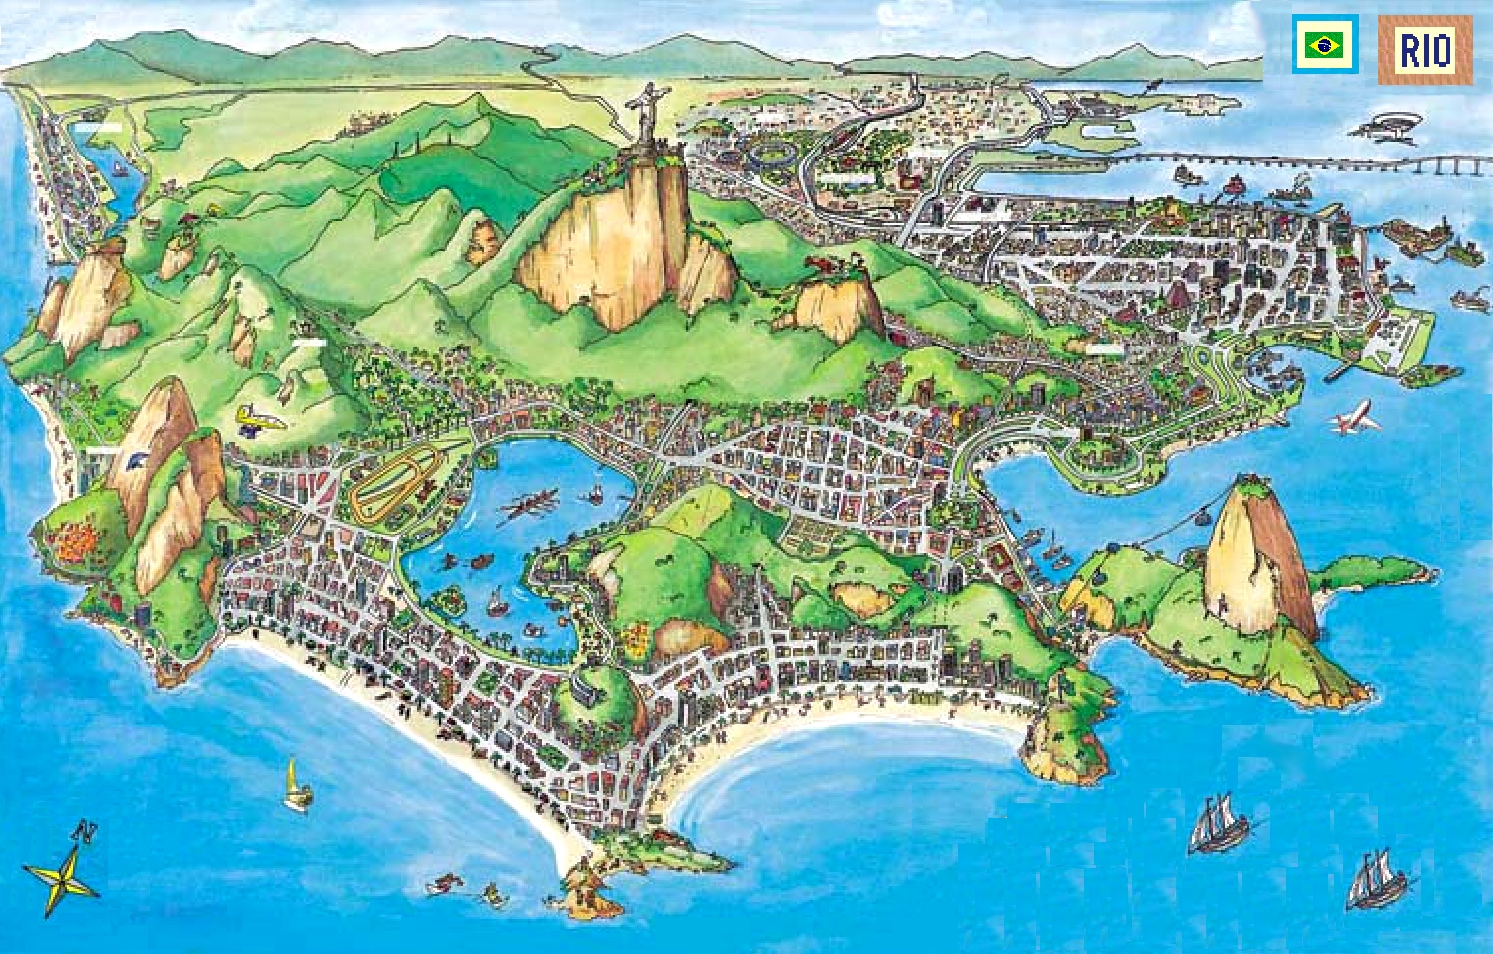 Rio map